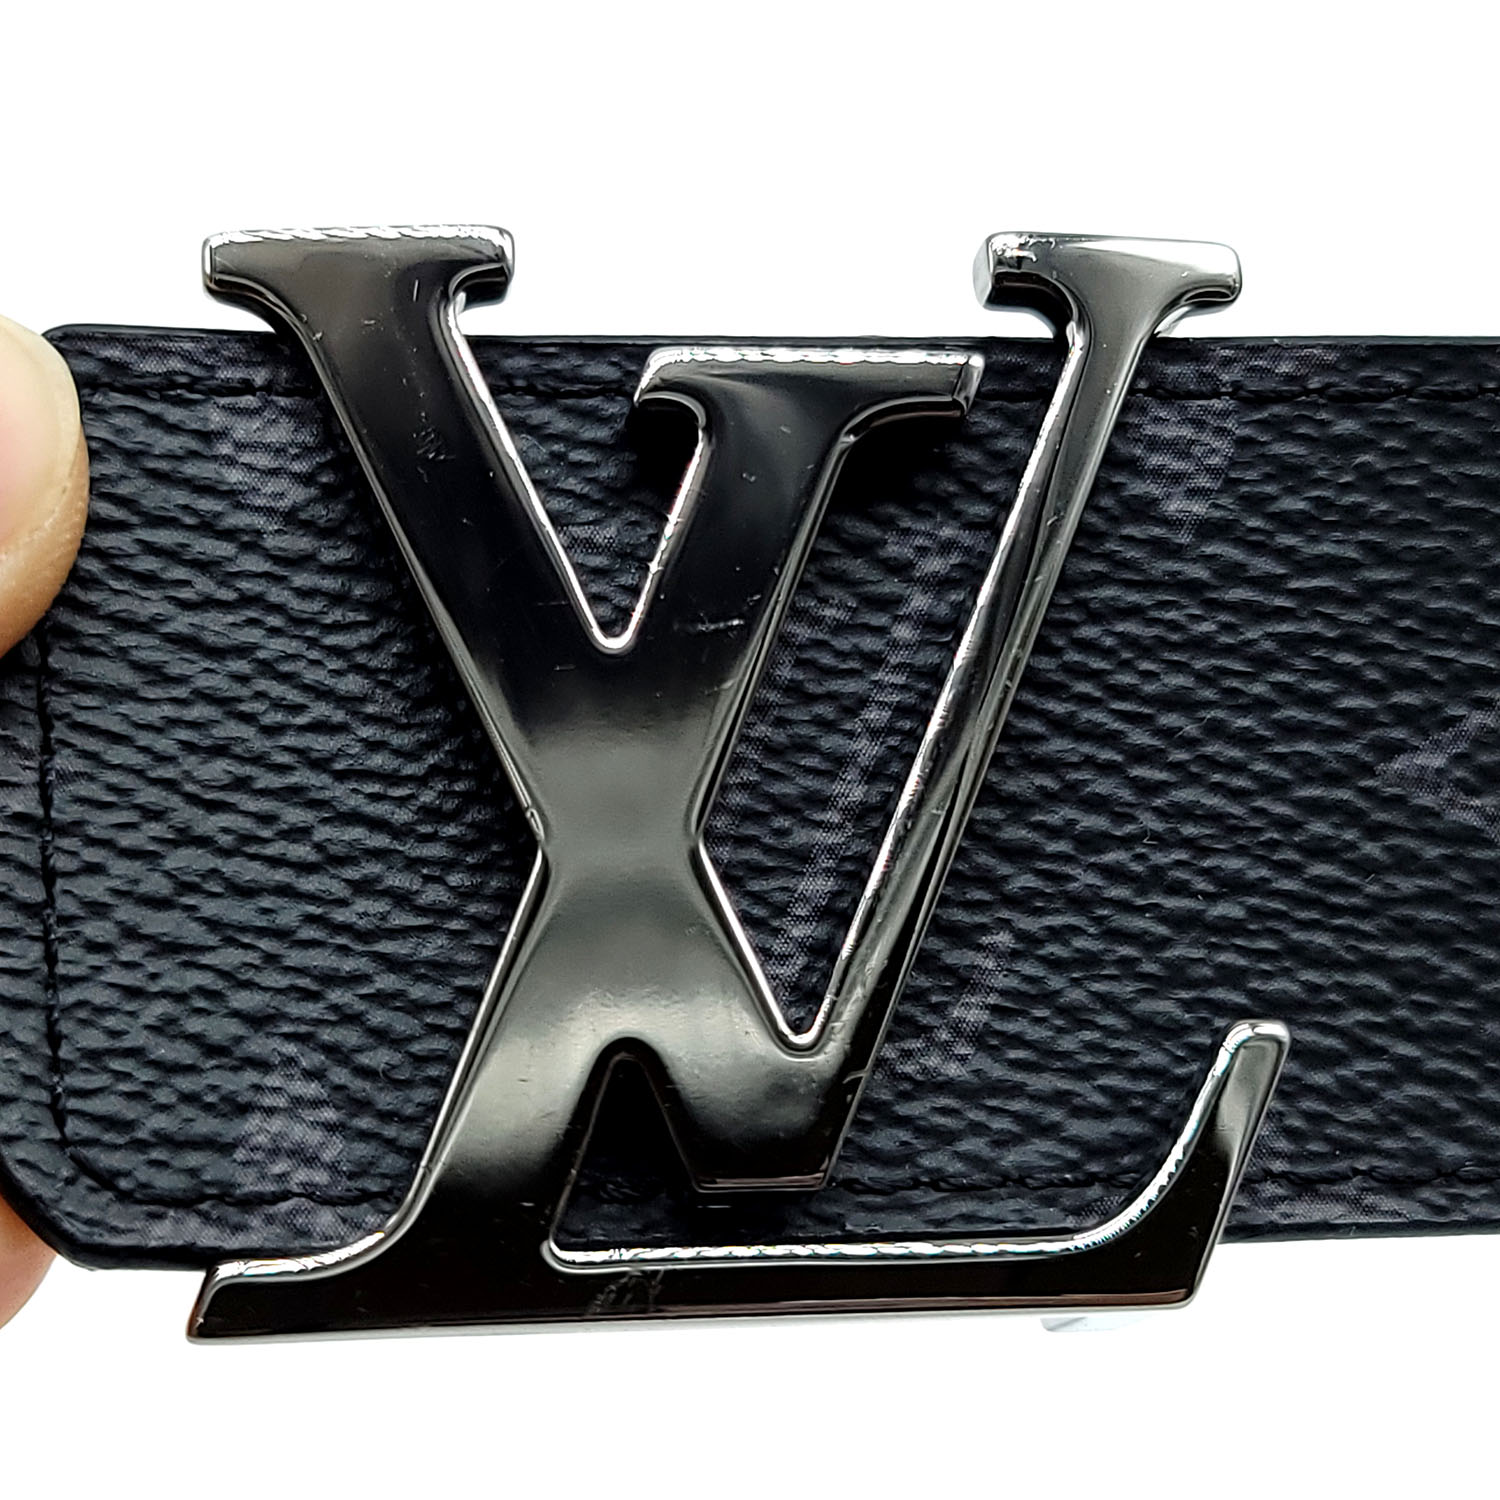 Louis Vuitton Monogram Eclipse Initiales Belt - 44 / 113.00 (SHG